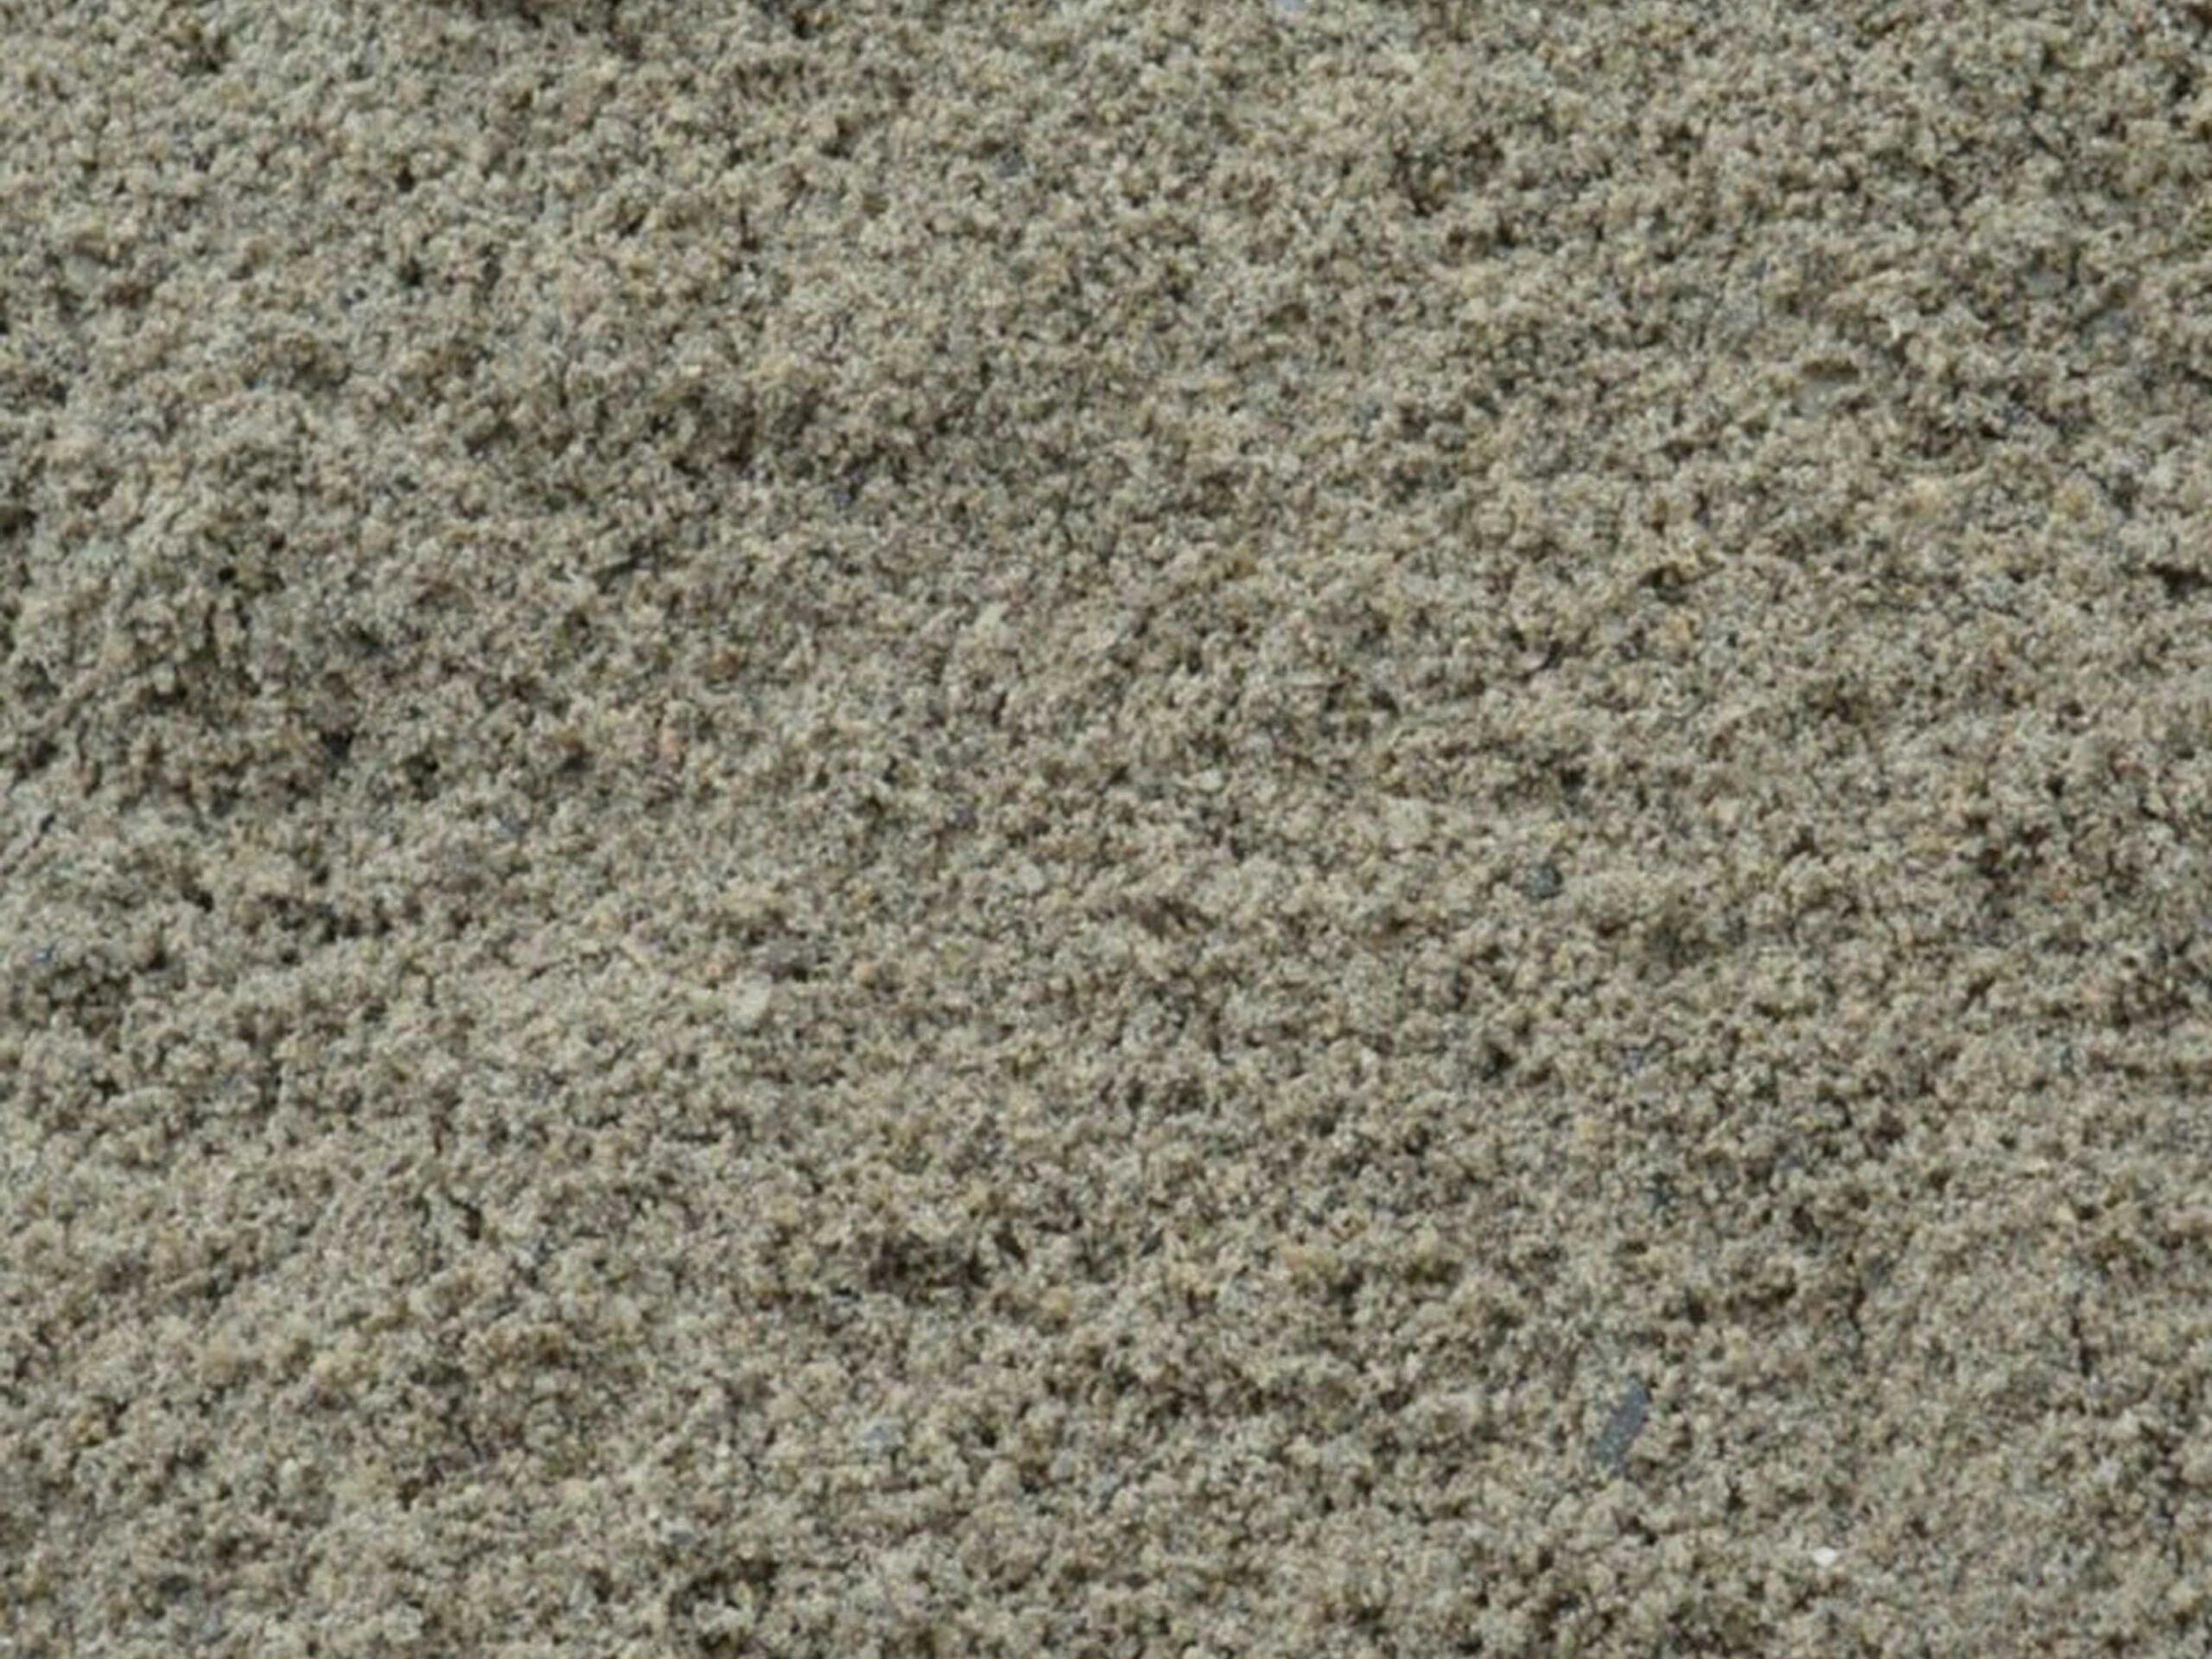 Visuel du sable de remblai appelé aussi maçon vert ou sable à lapin